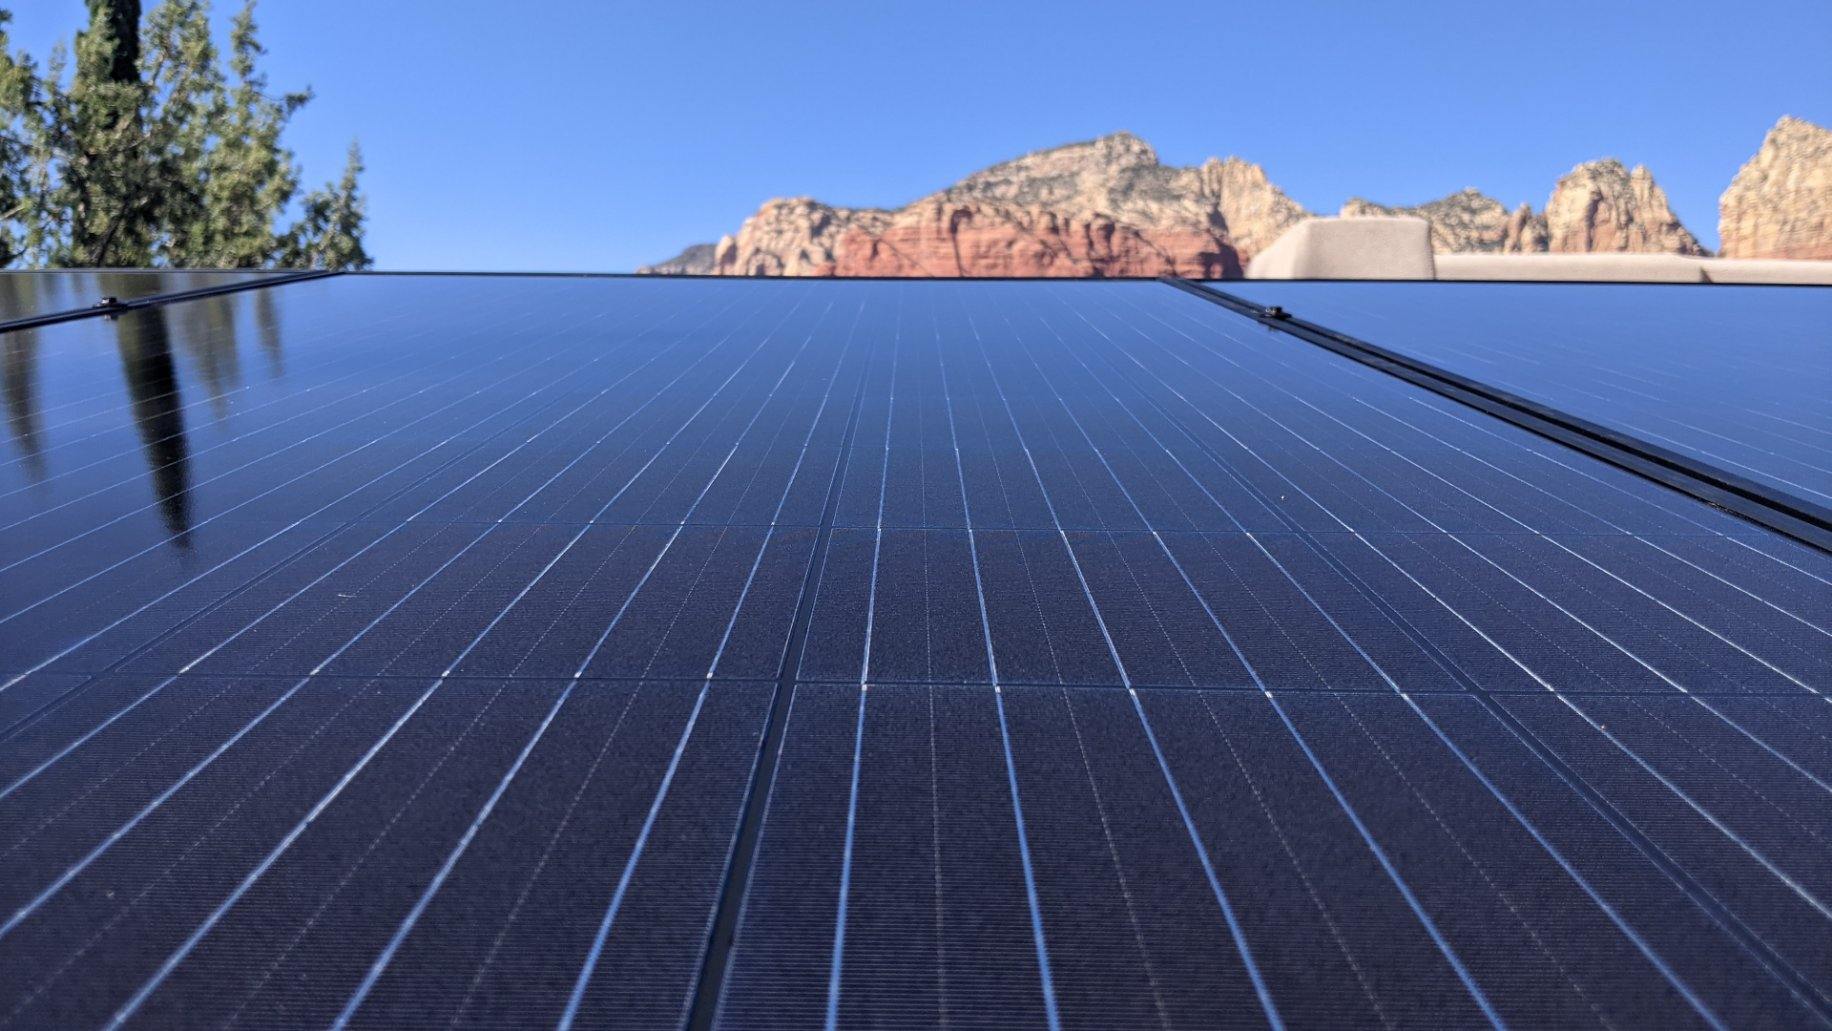 Rooftop solar installation